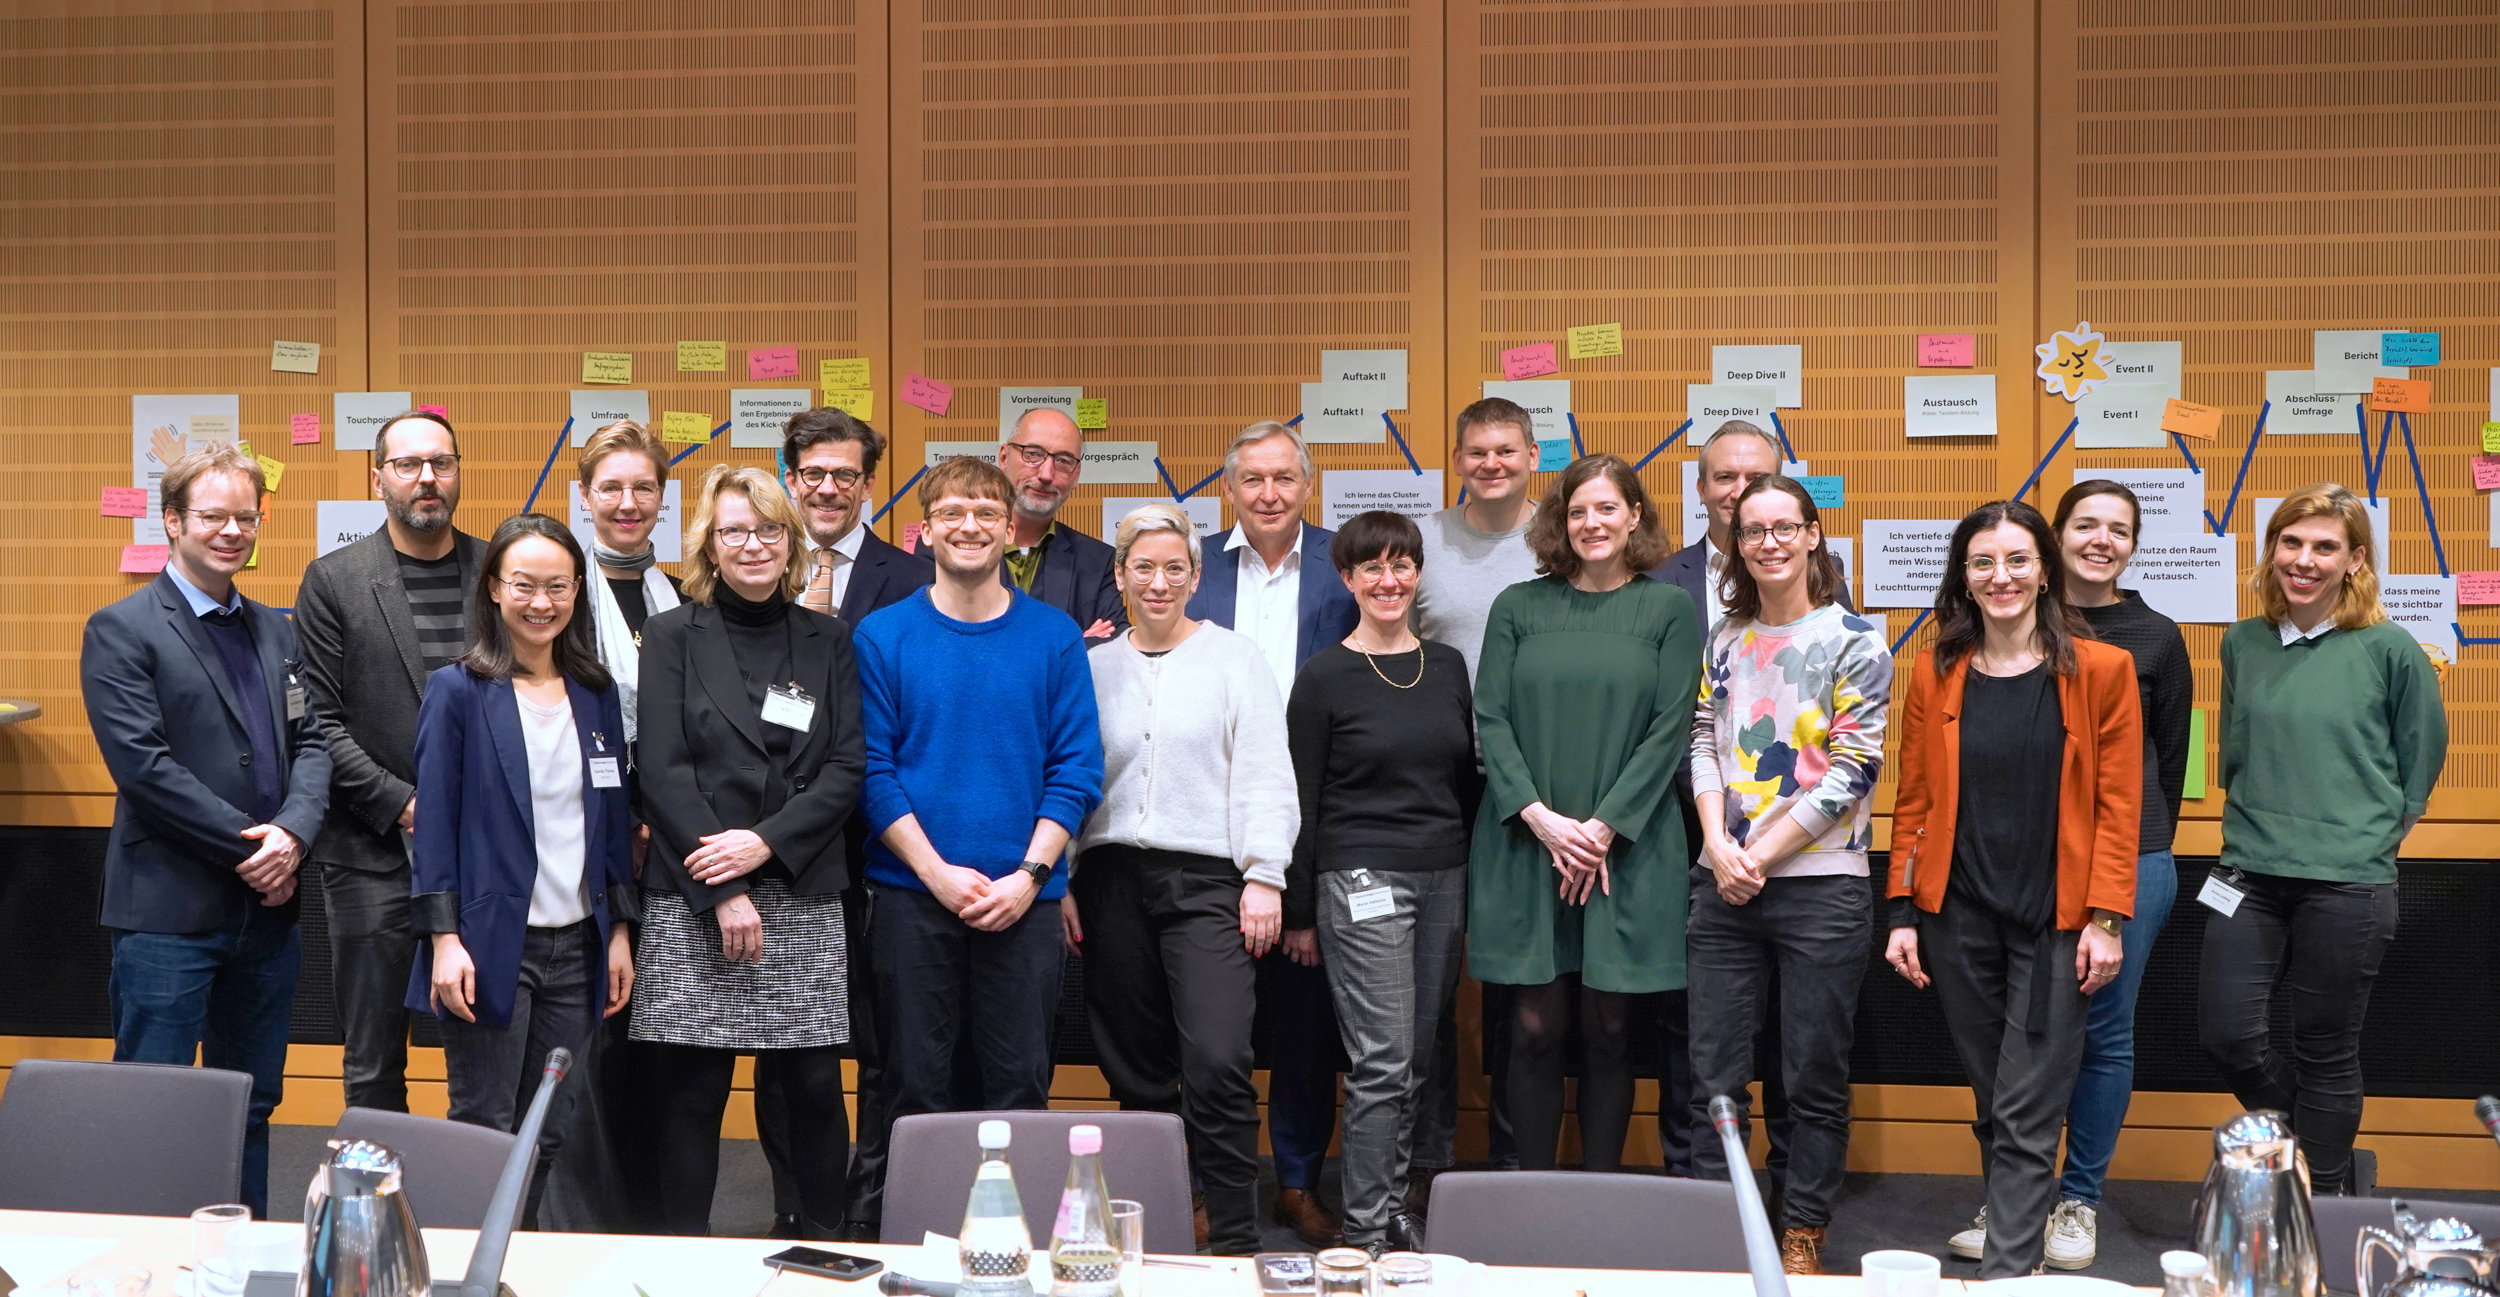 Gruppenfoto der teilnehmenden Personen der Austauschformate von BMDV, DigitalService und Beirat Digitalstrategie Deutschland